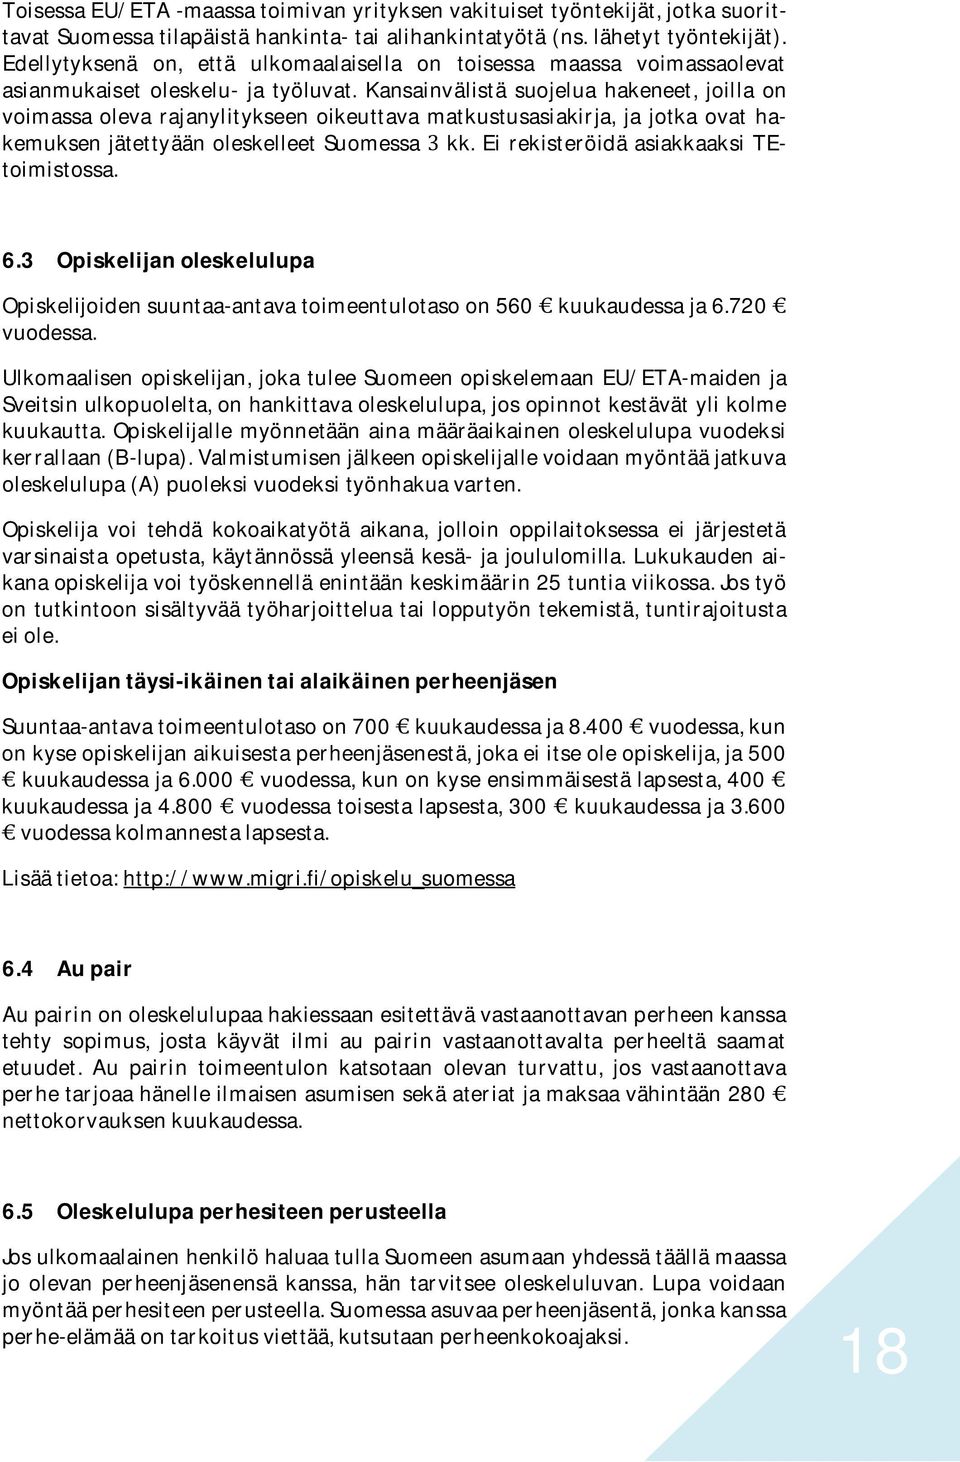 Kansainvälistä suojelua hakeneet, joilla on voimassa oleva rajanylitykseen oikeuttava matkustusasiakirja, ja jotka ovat hakemuksen jätettyään oleskelleet Suomessa 3 kk.